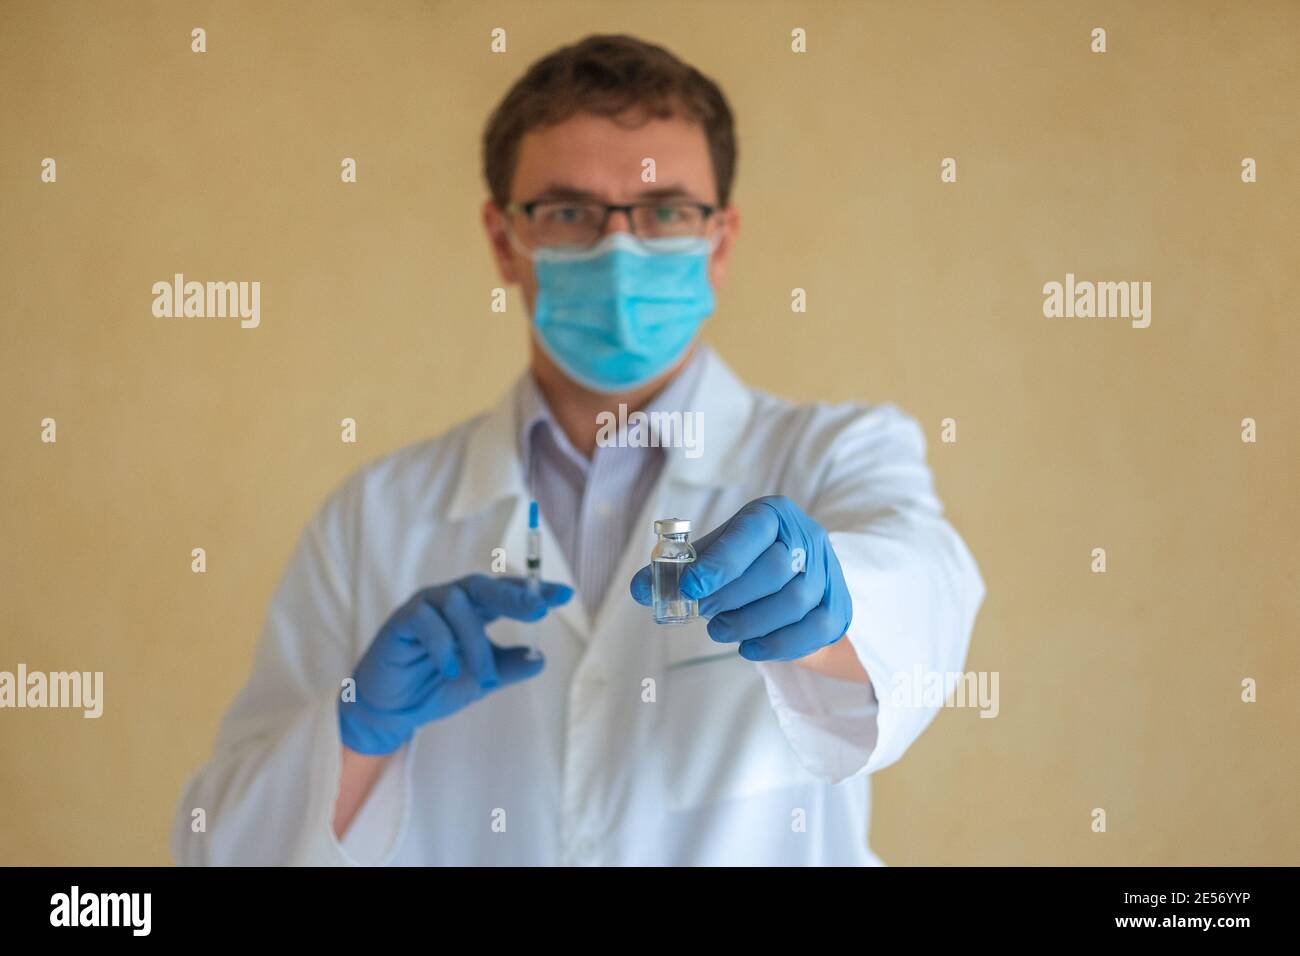 Un homme médecin dans un masque de protection et des gants en latex bleu tient une ampoule avec un vaccin et une seringue. Concentrez-vous sur l'ampoule Banque D'Images